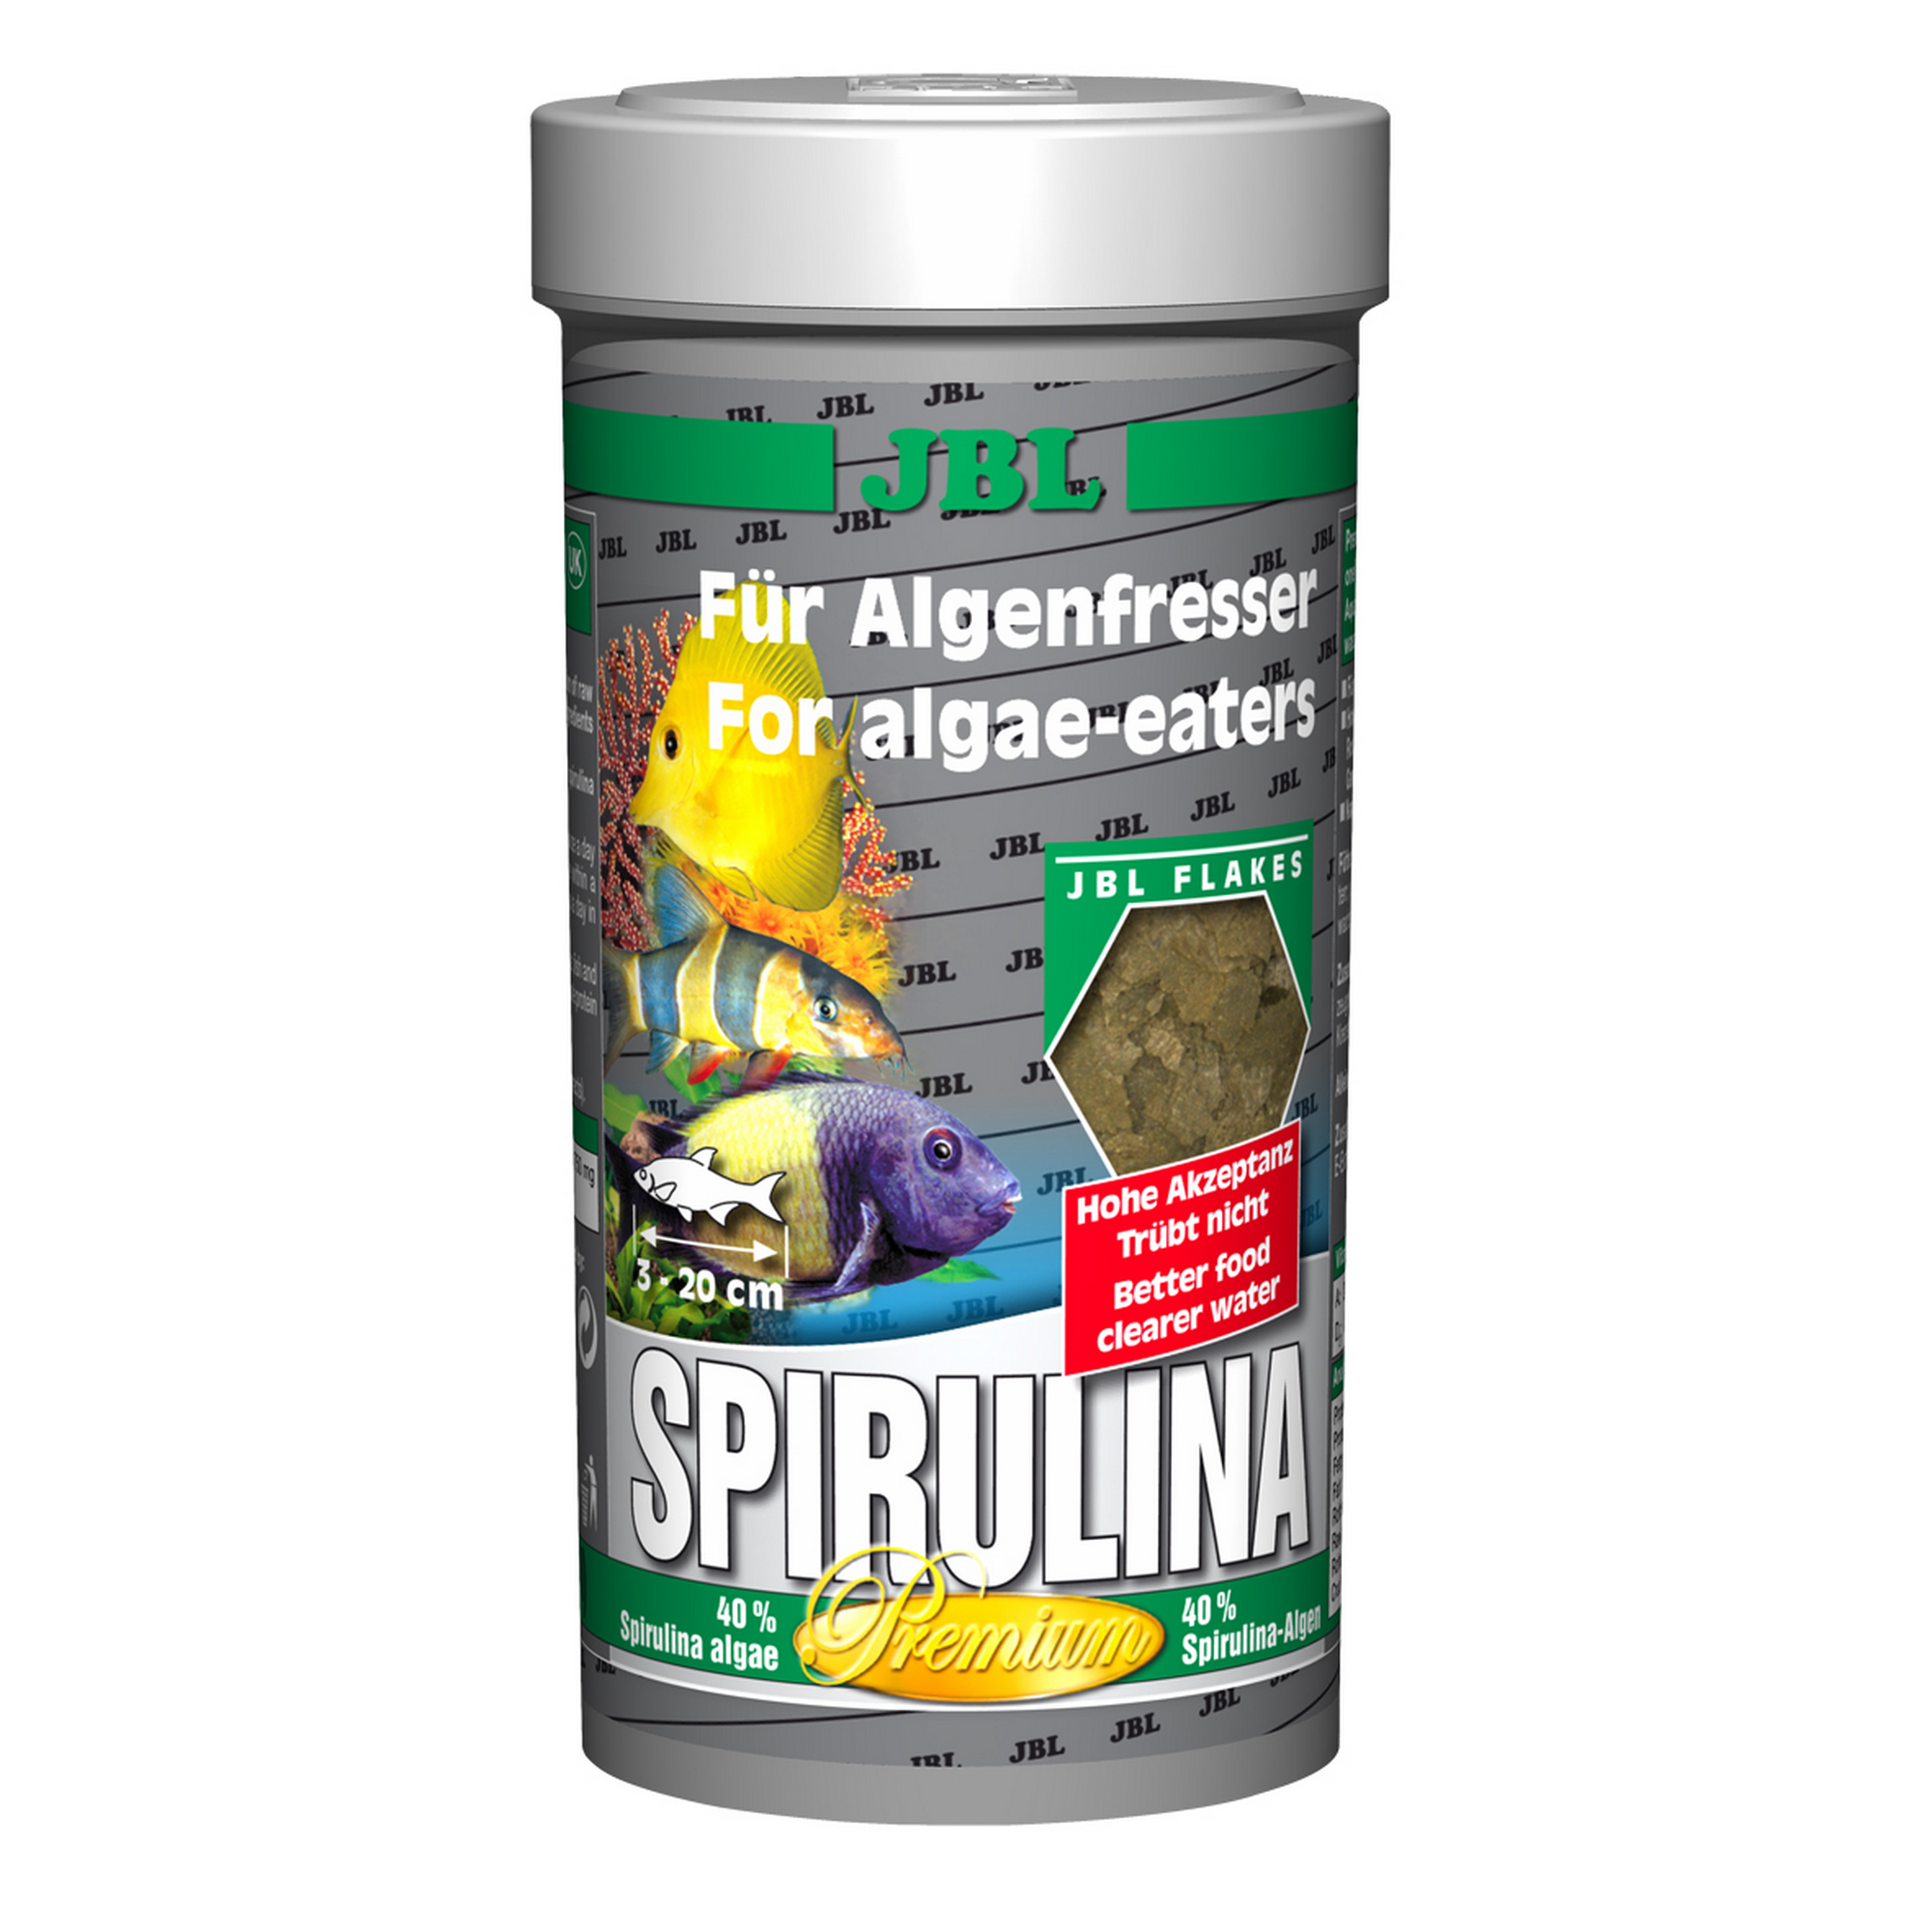 Spiruilina Premium Für Algenfresser + product picture